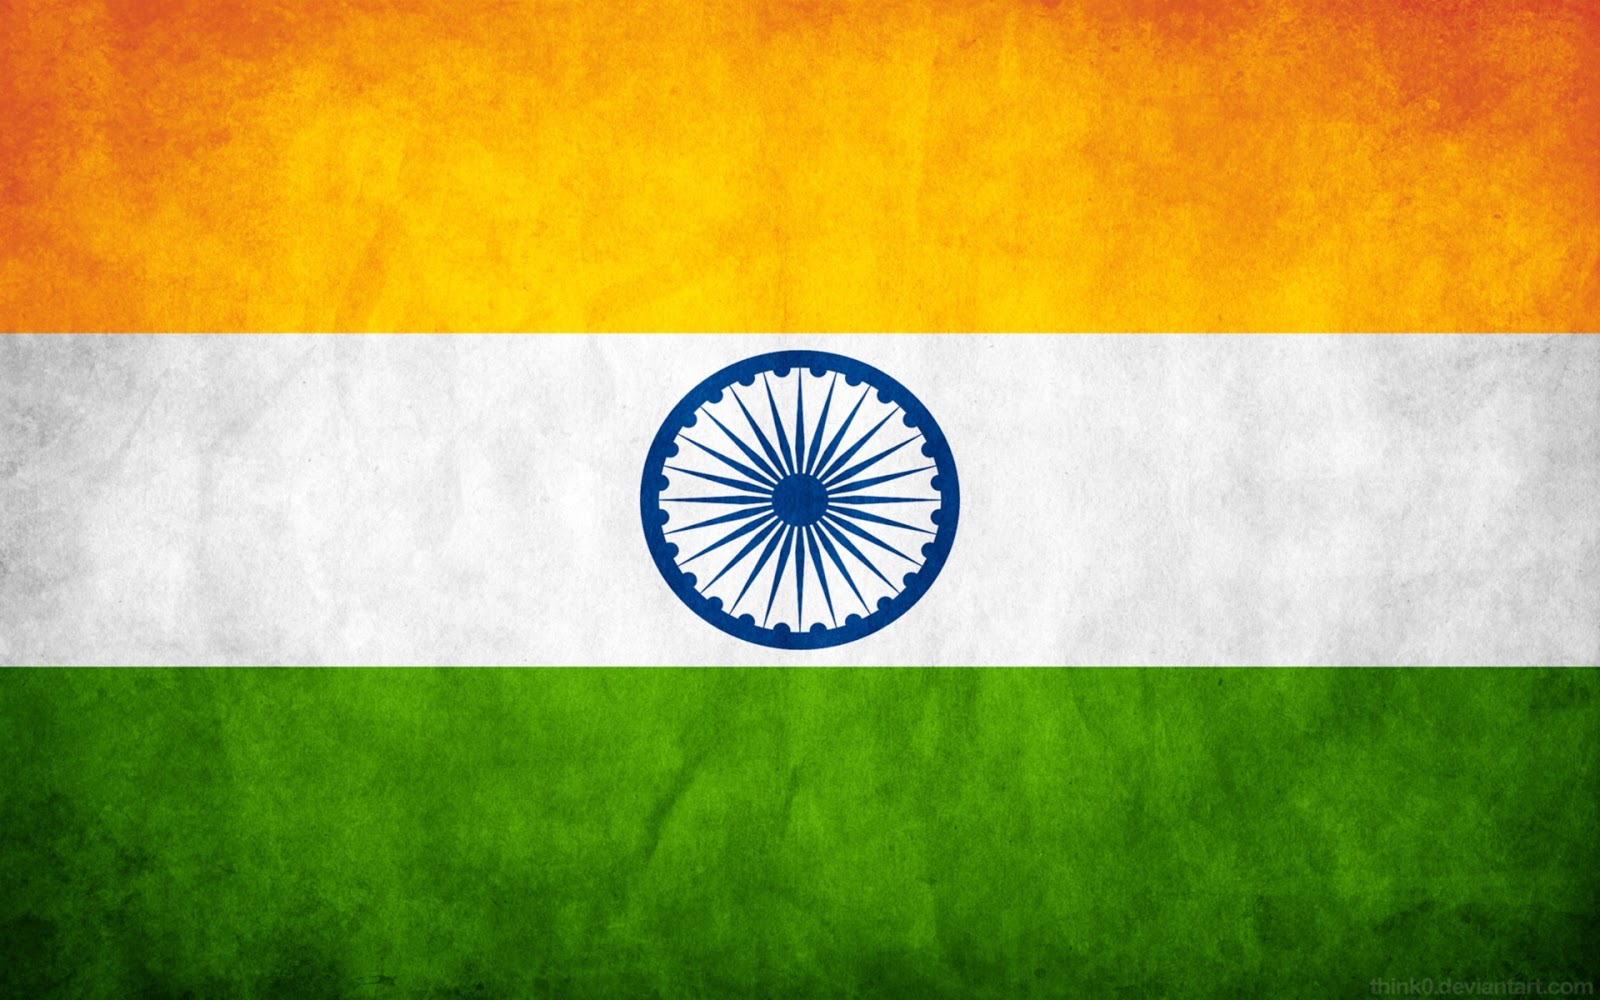 http://4.bp.blogspot.com/-dRCCV6hm5bQ/UMetj0sNyXI/AAAAAAAAA2Q/4prryH2HbwQ/s1600/India+Flag+New+HD+Wallpaper+(1).jpg